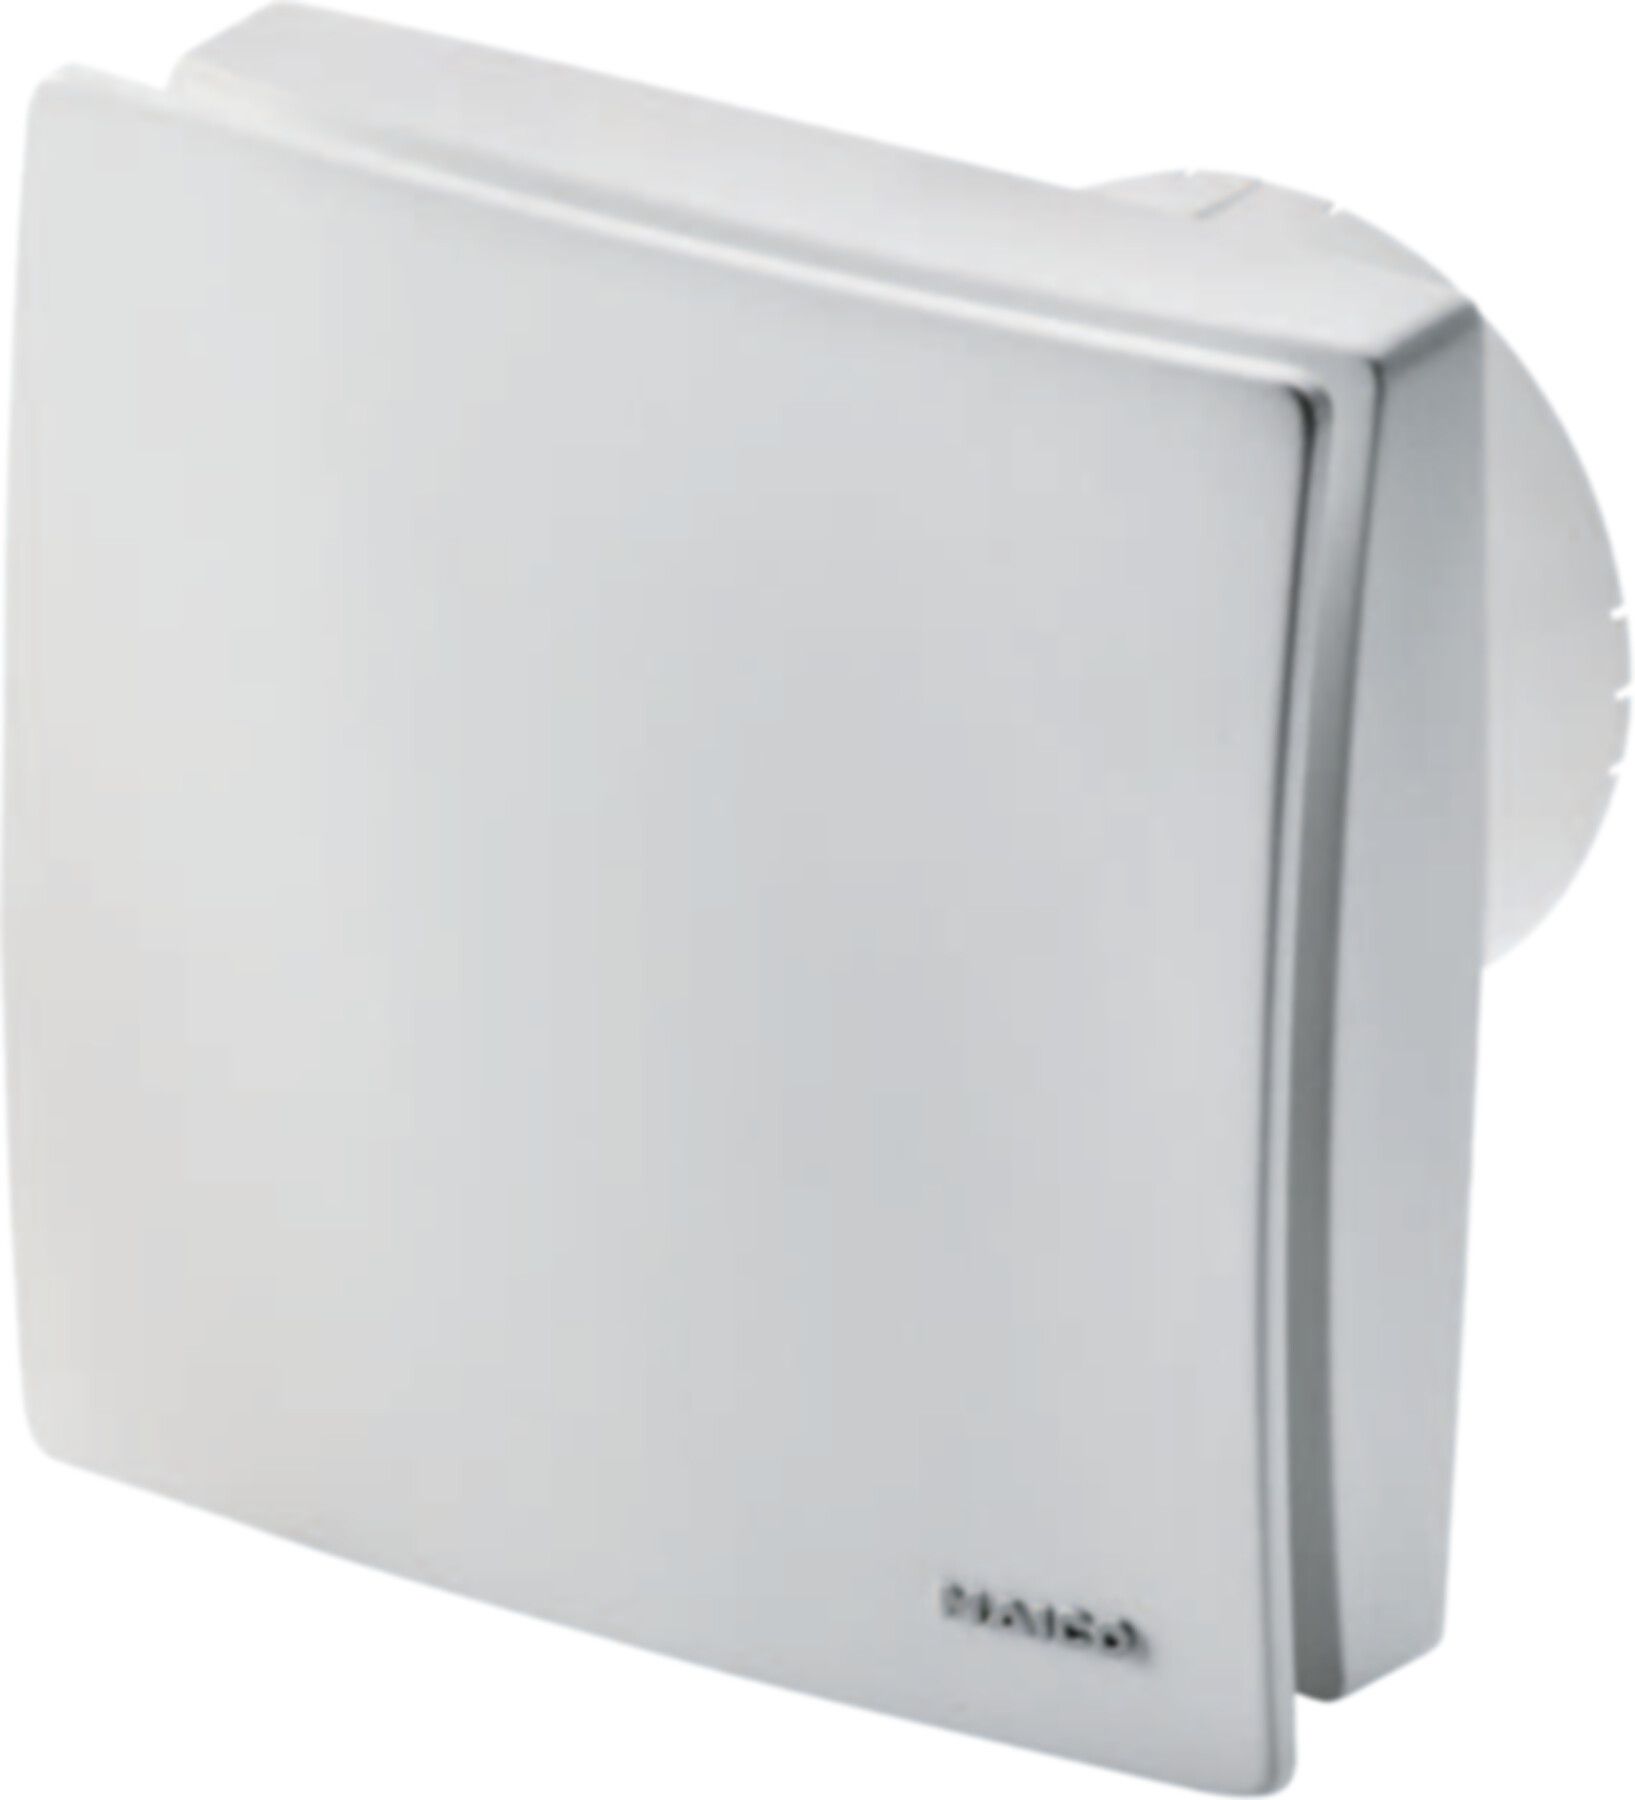 Bad / WC-Ventilatoren COMPETAIR Maico ECA 100 ipro KVZC